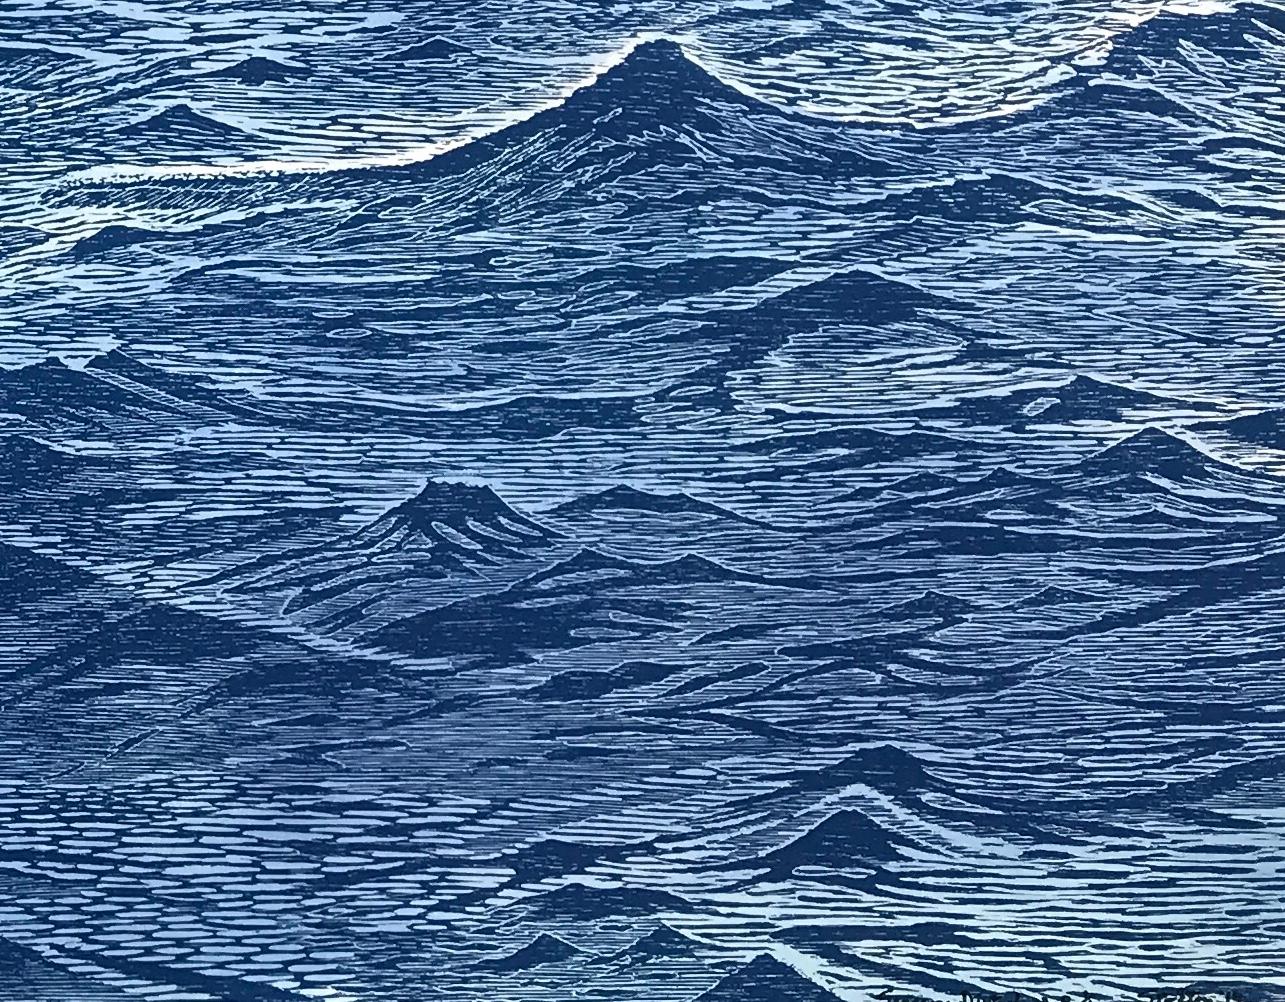 Diptyque de paysage marin 23, grande gravure horizontale sur bois bleue représentant de l'eau et des vagues océaniques - Print de Eve Stockton